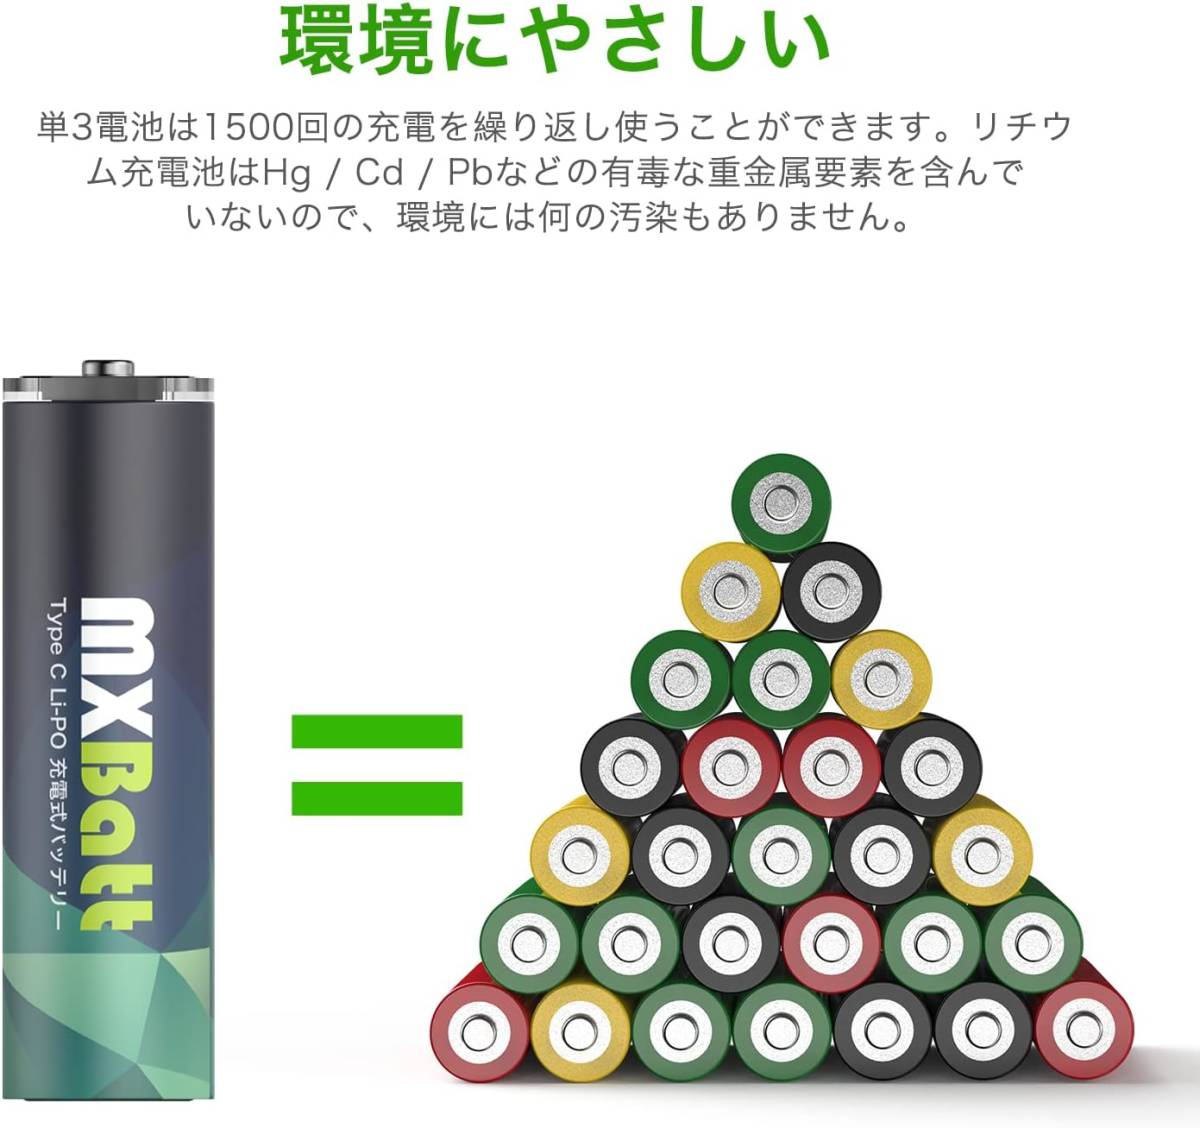 単3充電池4本 MXBatt リチウムイオン充電池 1.5V充電池 単3形 充電式 AA リチウム電池 3400mWh 保護回路付_画像2